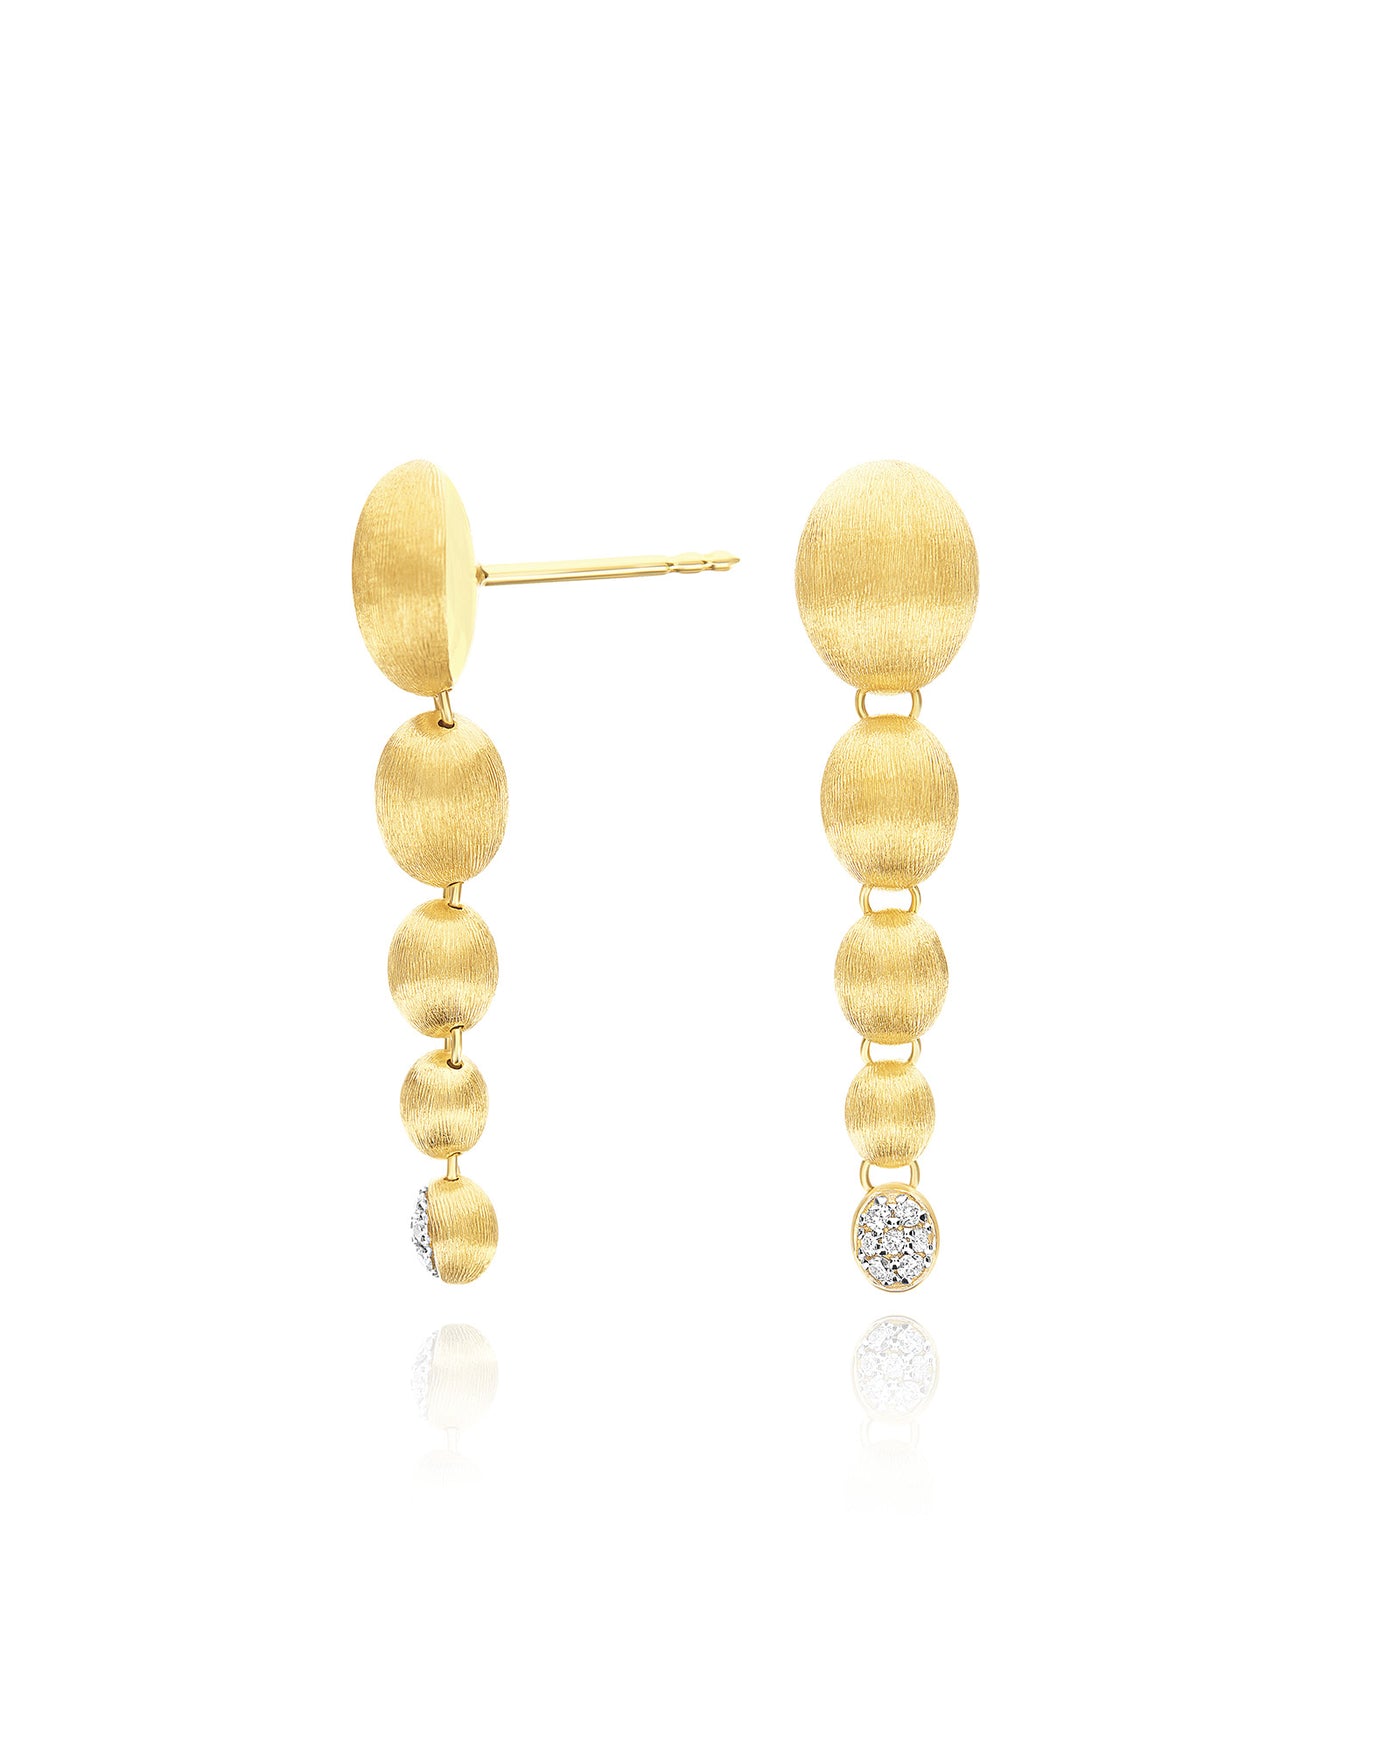 Ohrhänger "nuvolette" mit Degradé Boules aus gold und Diamanten